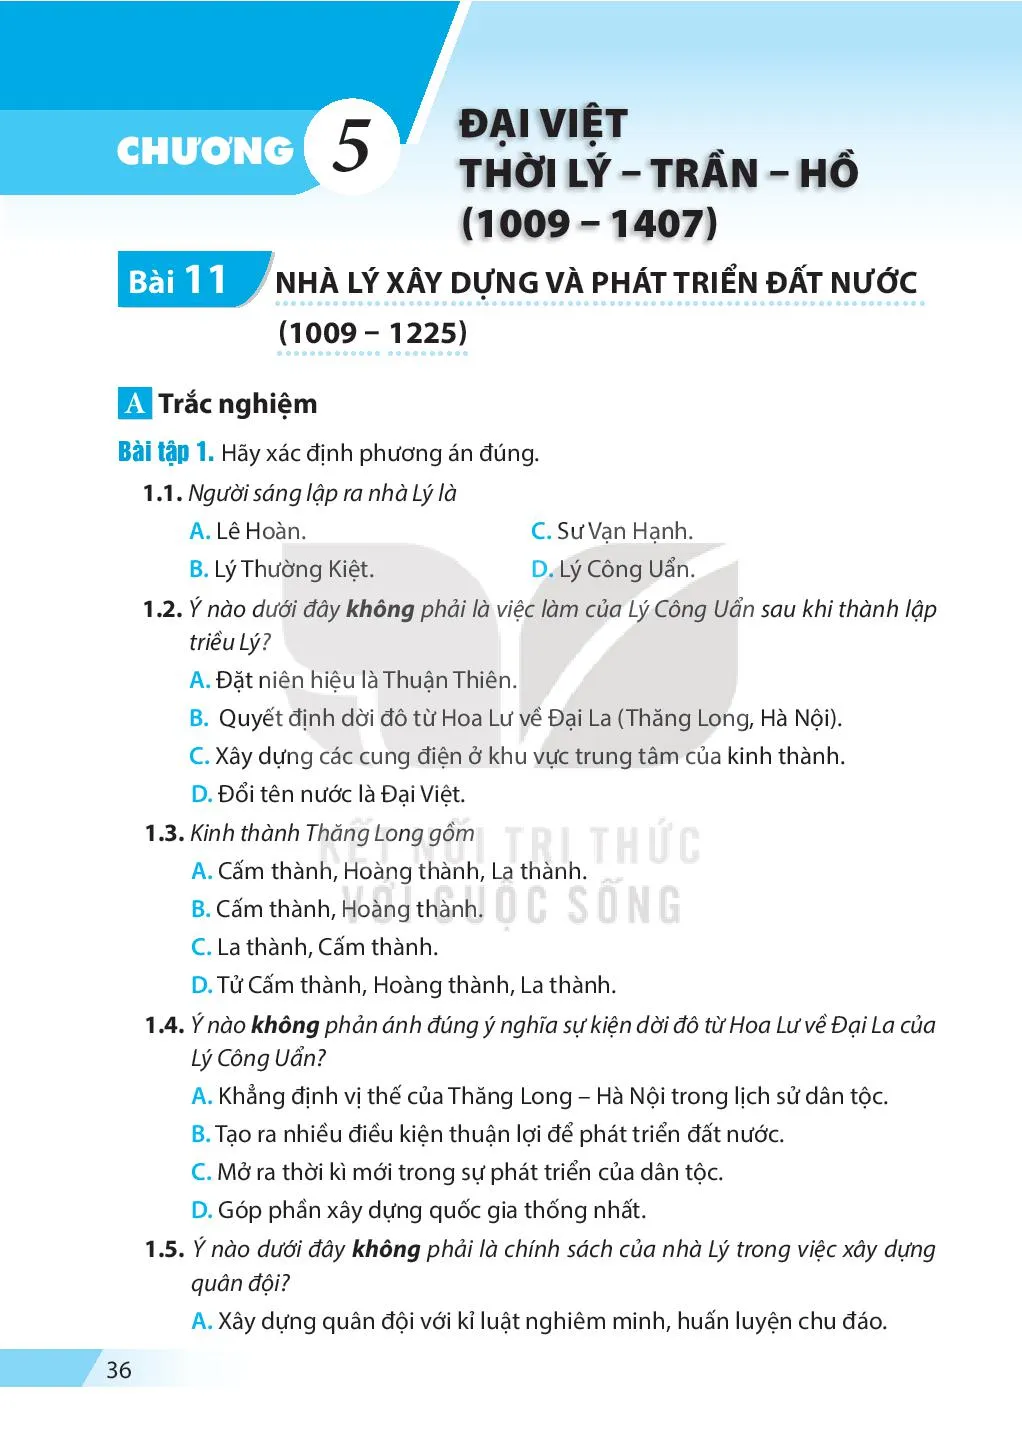 Bài 10. Đại Cồ Việt thời Đinh và Tiền Lê (968 – 1009)